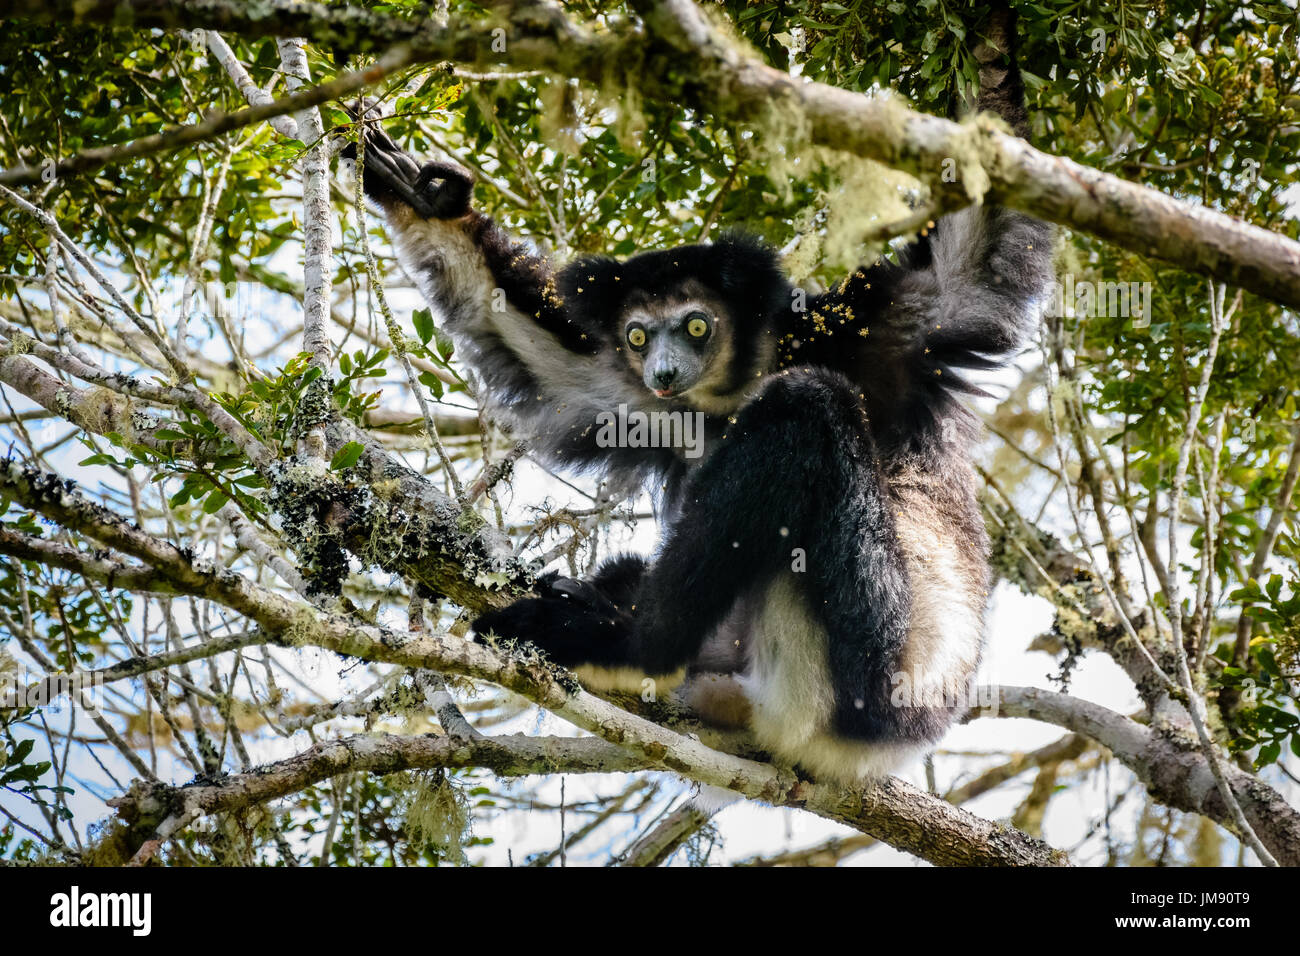 Peligro de Indri Lemur colgando en copa de árbol mirando a la cámara rodeados de hojas y flores. Foto de stock